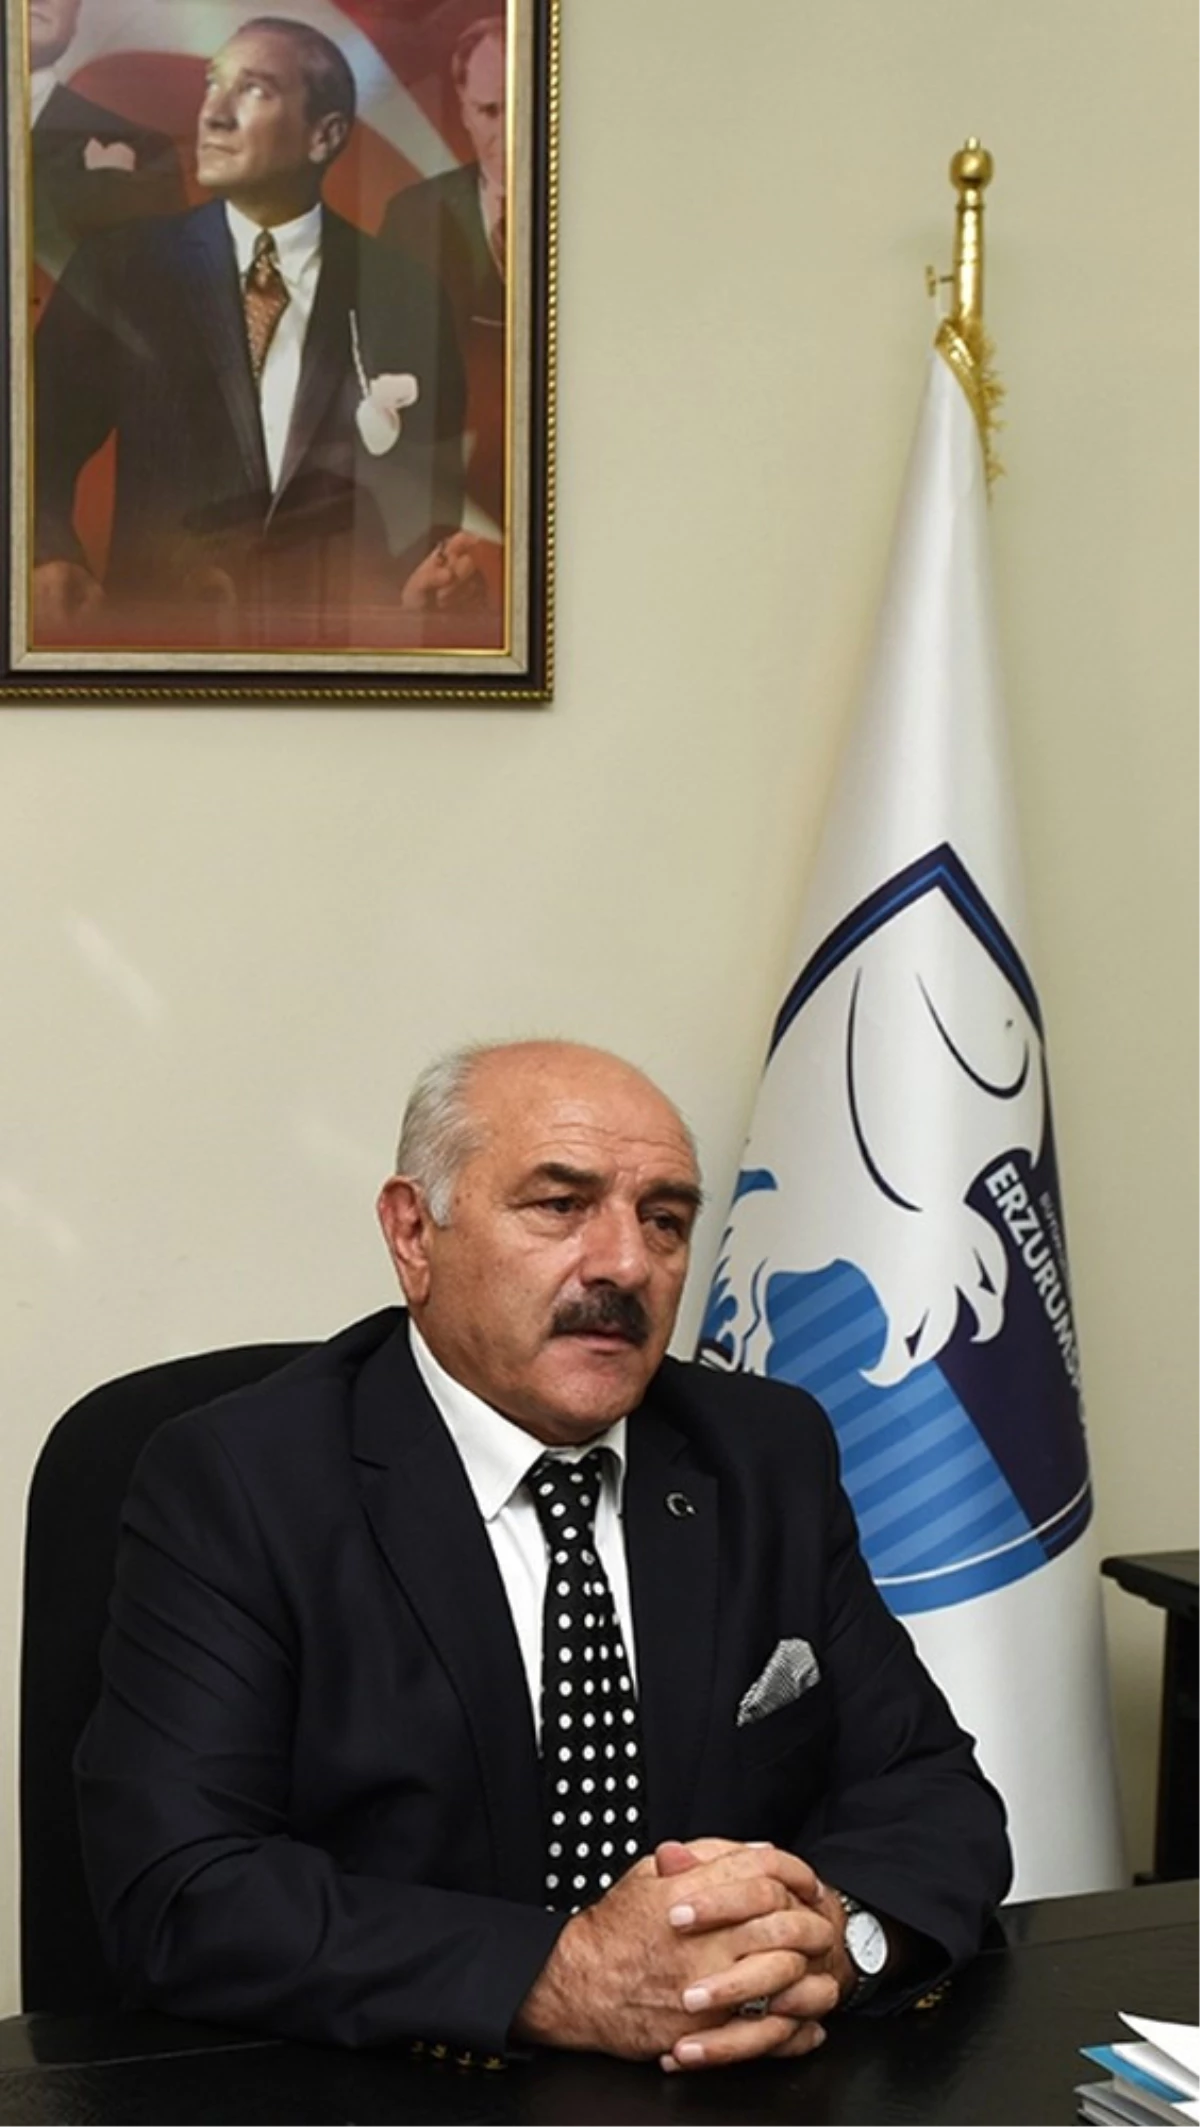 B.b. Erzurumspor Kulübü Asbaşkanı Kıraç: "Yabancılar Yüzünden Yerli Oyuncularımızı Oynatamıyoruz"